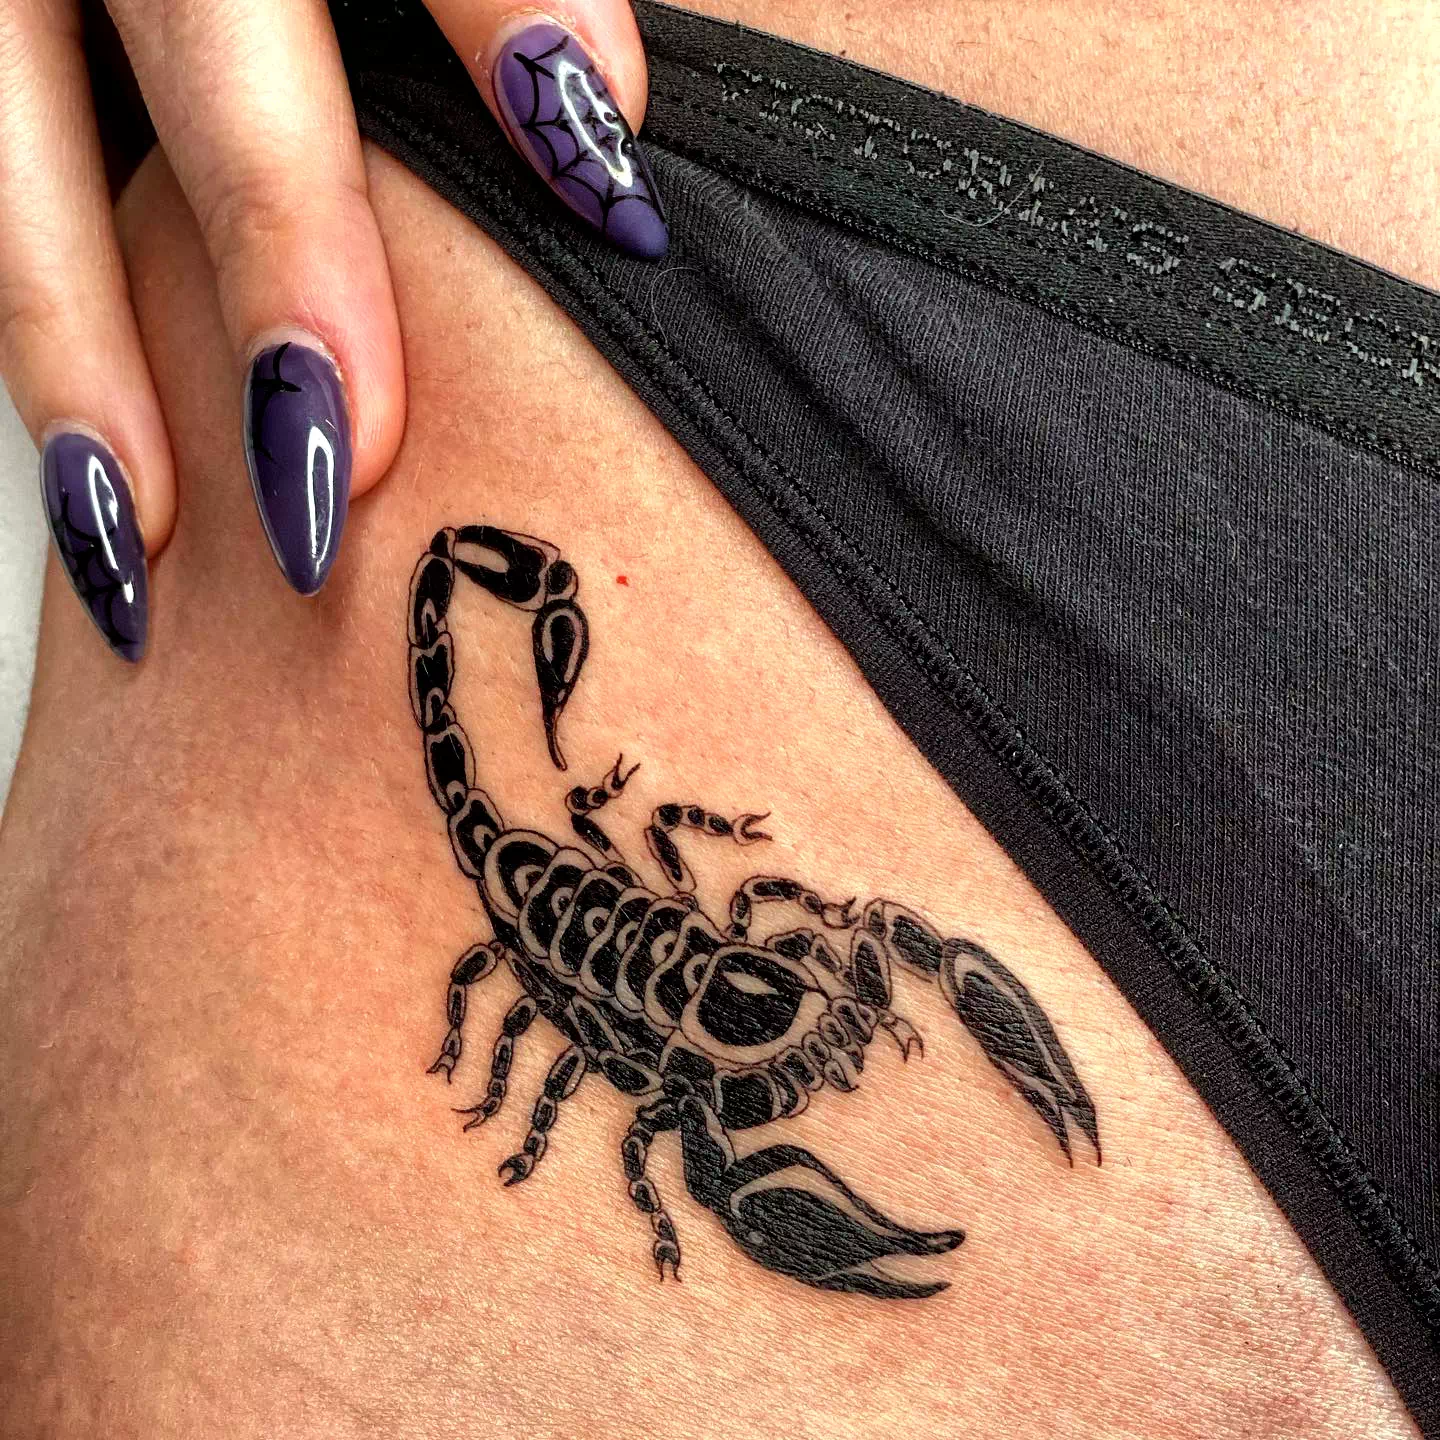 Schwarzer Skorpion Tattoo auf Oberschenkel 2